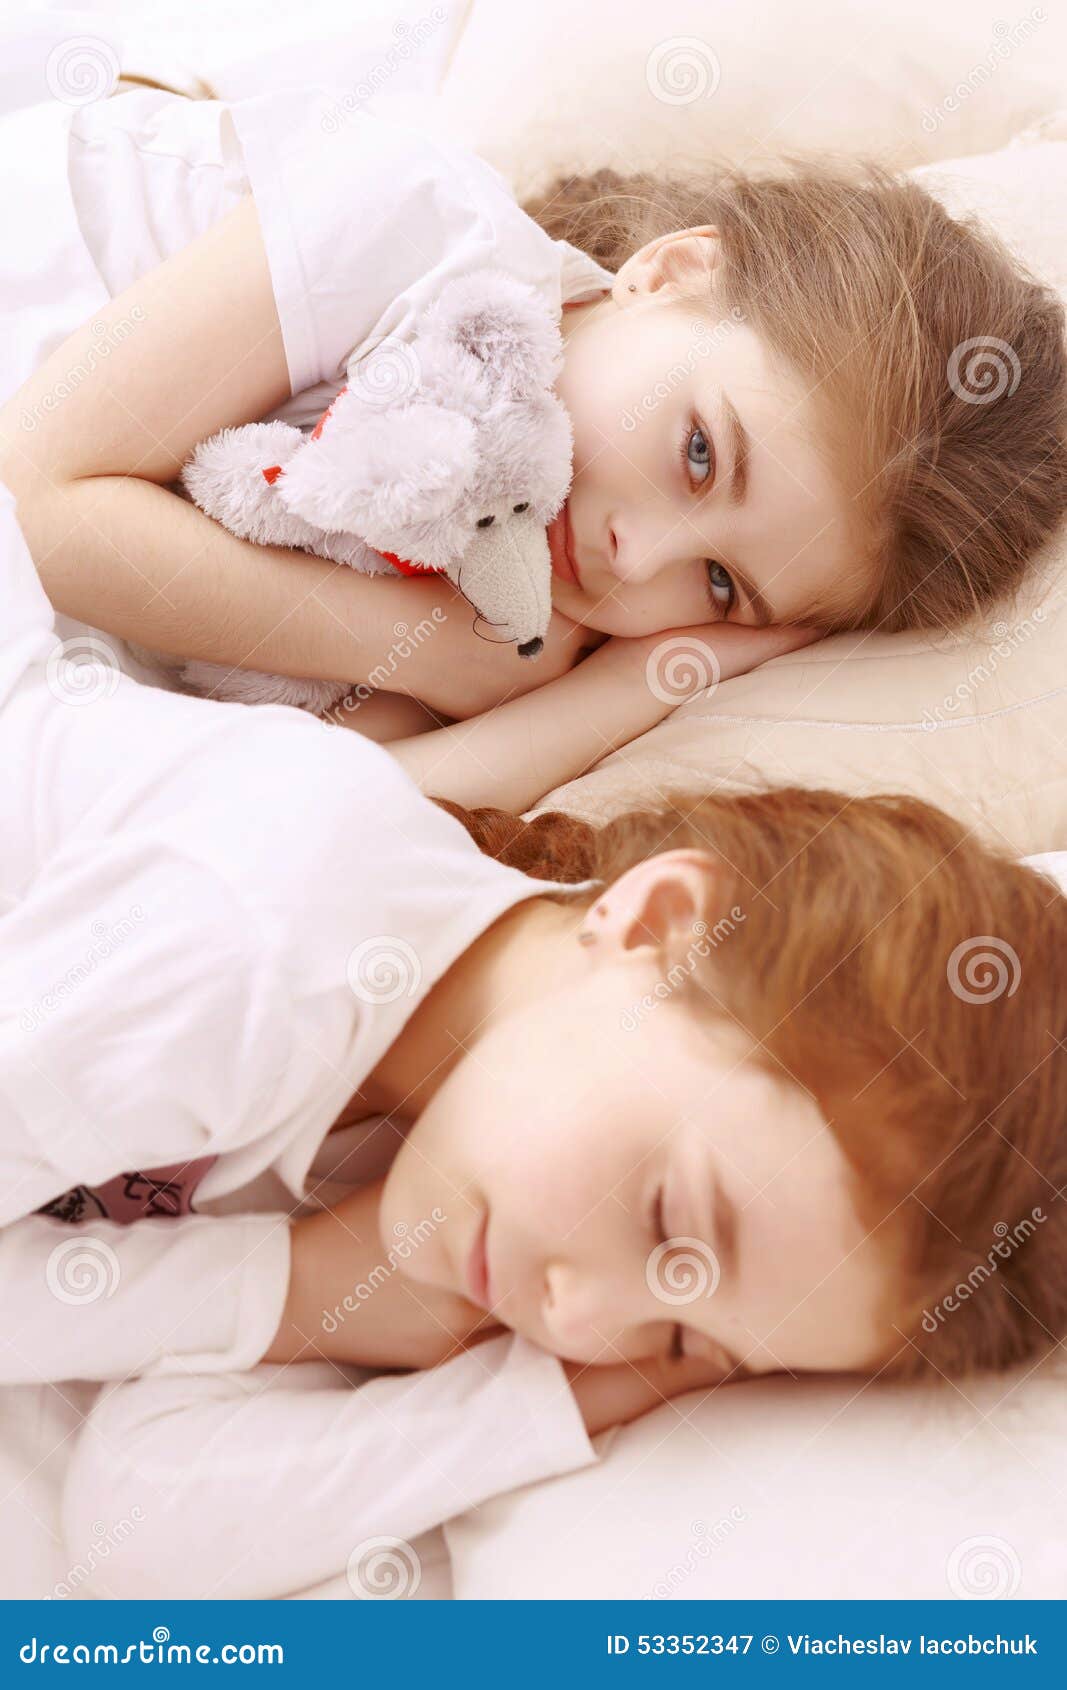 Сестра спала читать. Две девочки спят. Две сестры спят. Спящие мвоенькие девоч.